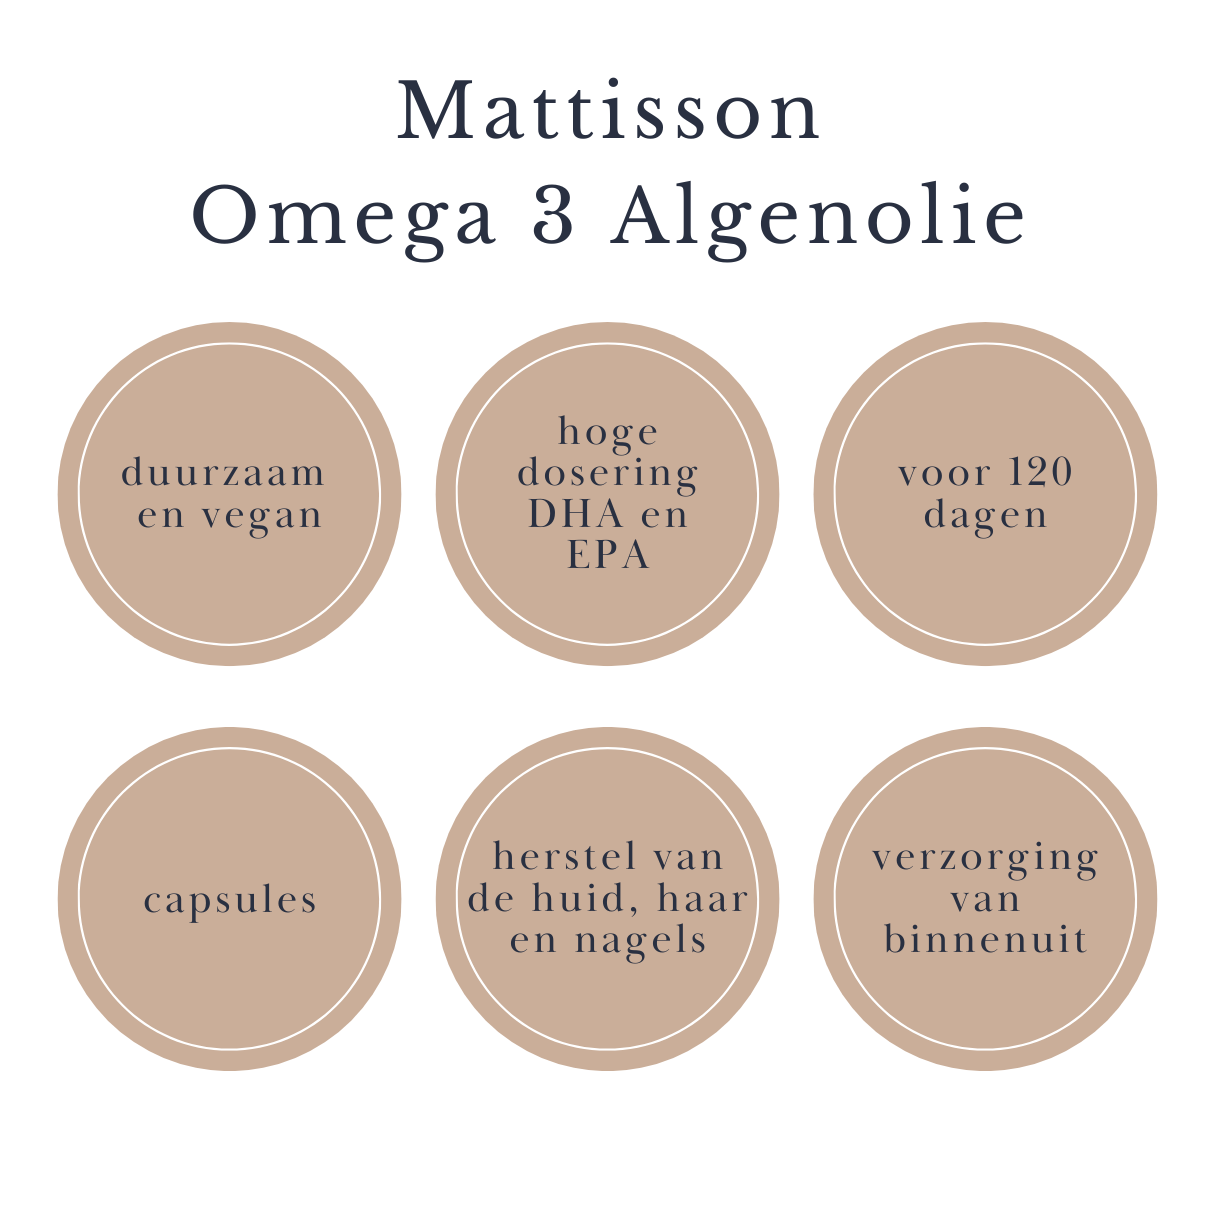 Vegan Omega 3 Algenolie - Hoge dosering DHA en EPA